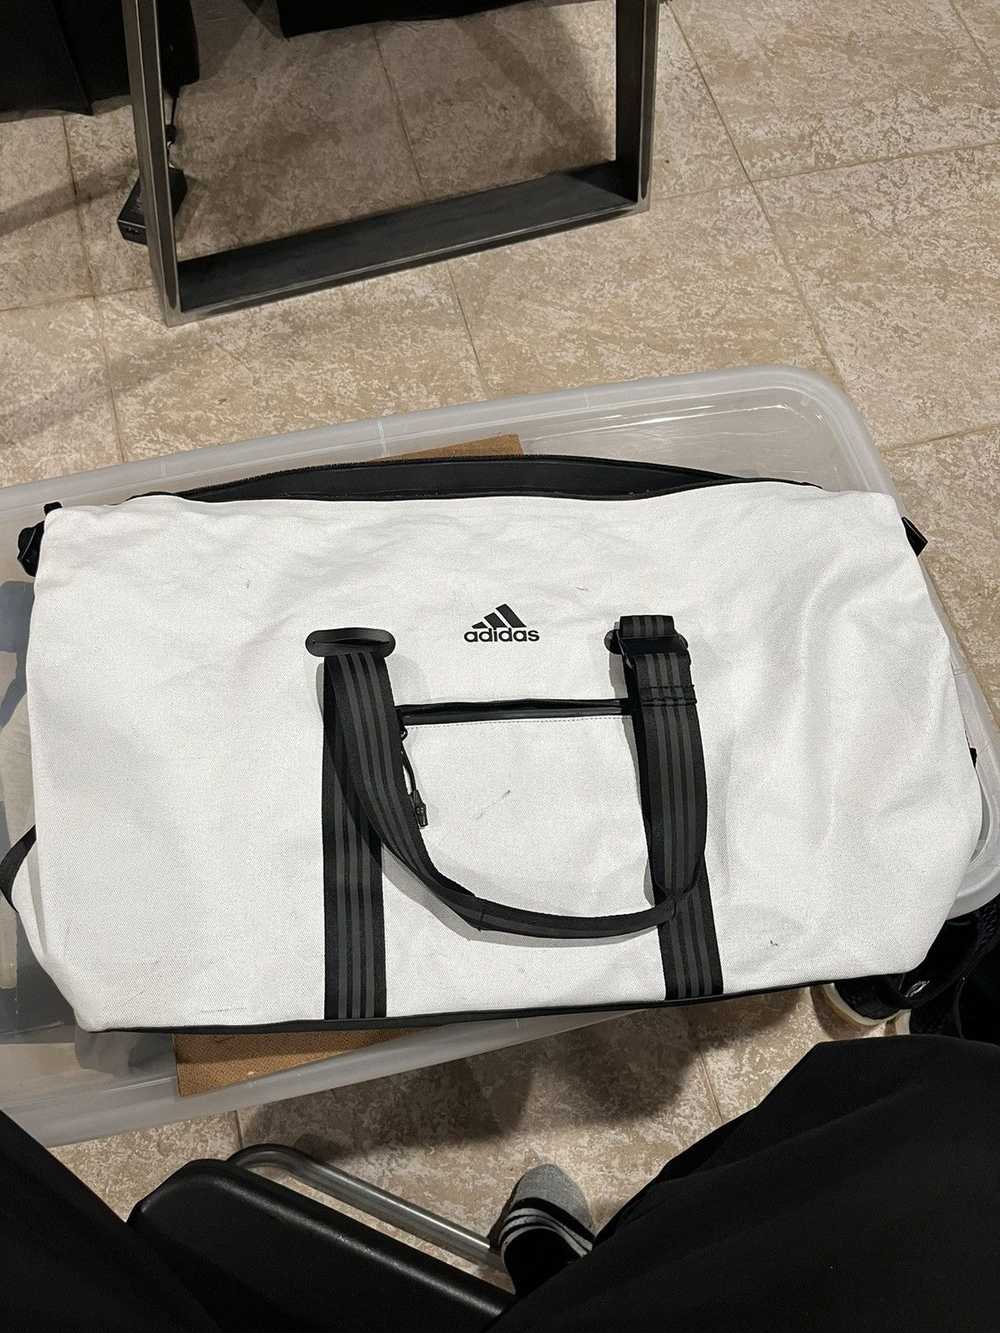 Adidas × Kith Kith x Adidas Duffle Bag - image 2